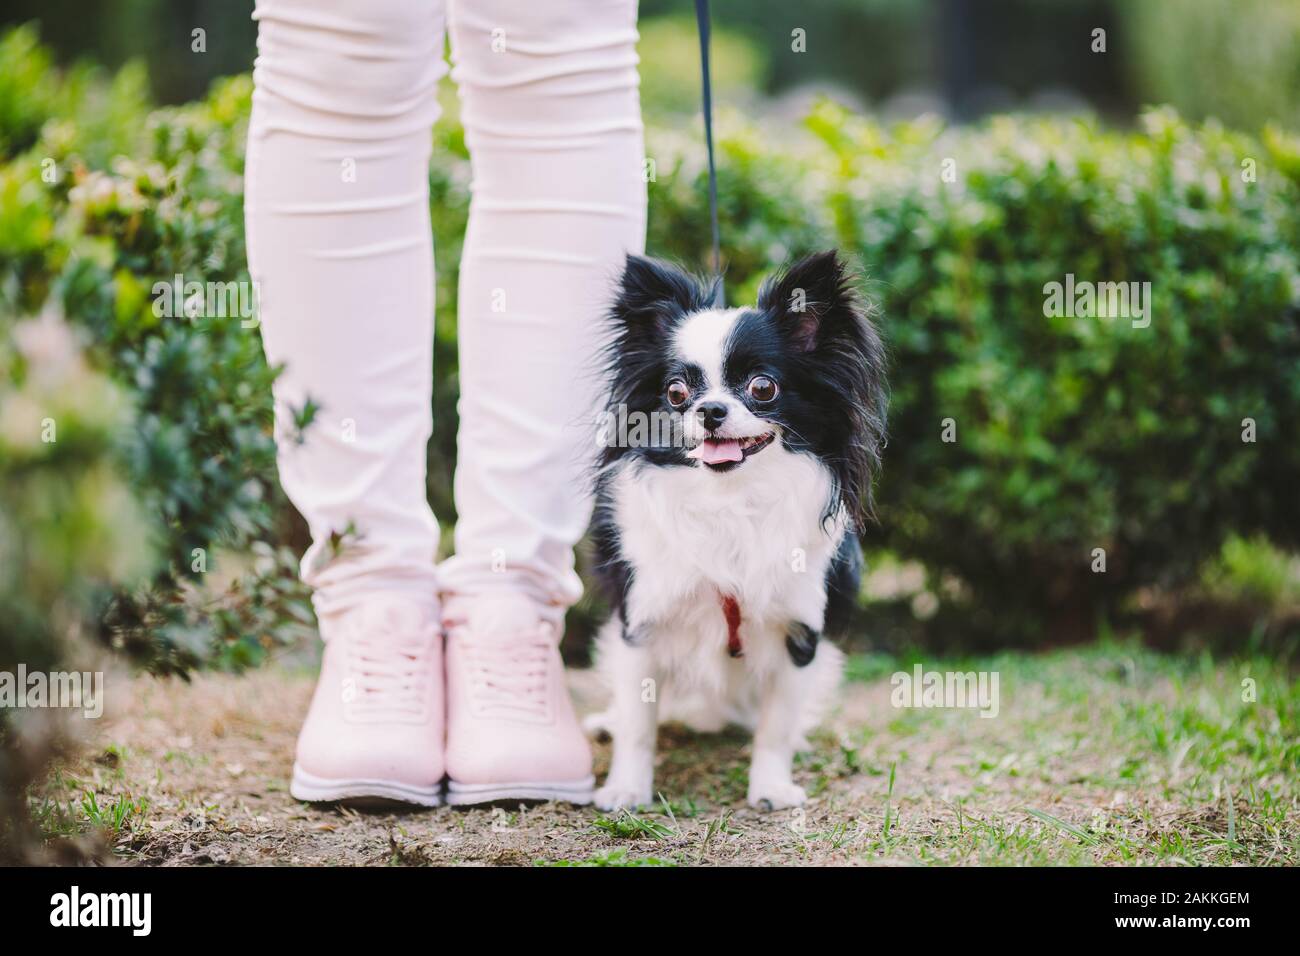 Dog sitter a proprietari di piedi. Close up di chihuahua cane. Chihuahua guardie del cane il proprietario. Gambe femmina e poco divertente capelli lunghi cane, in bianco e nero Foto Stock